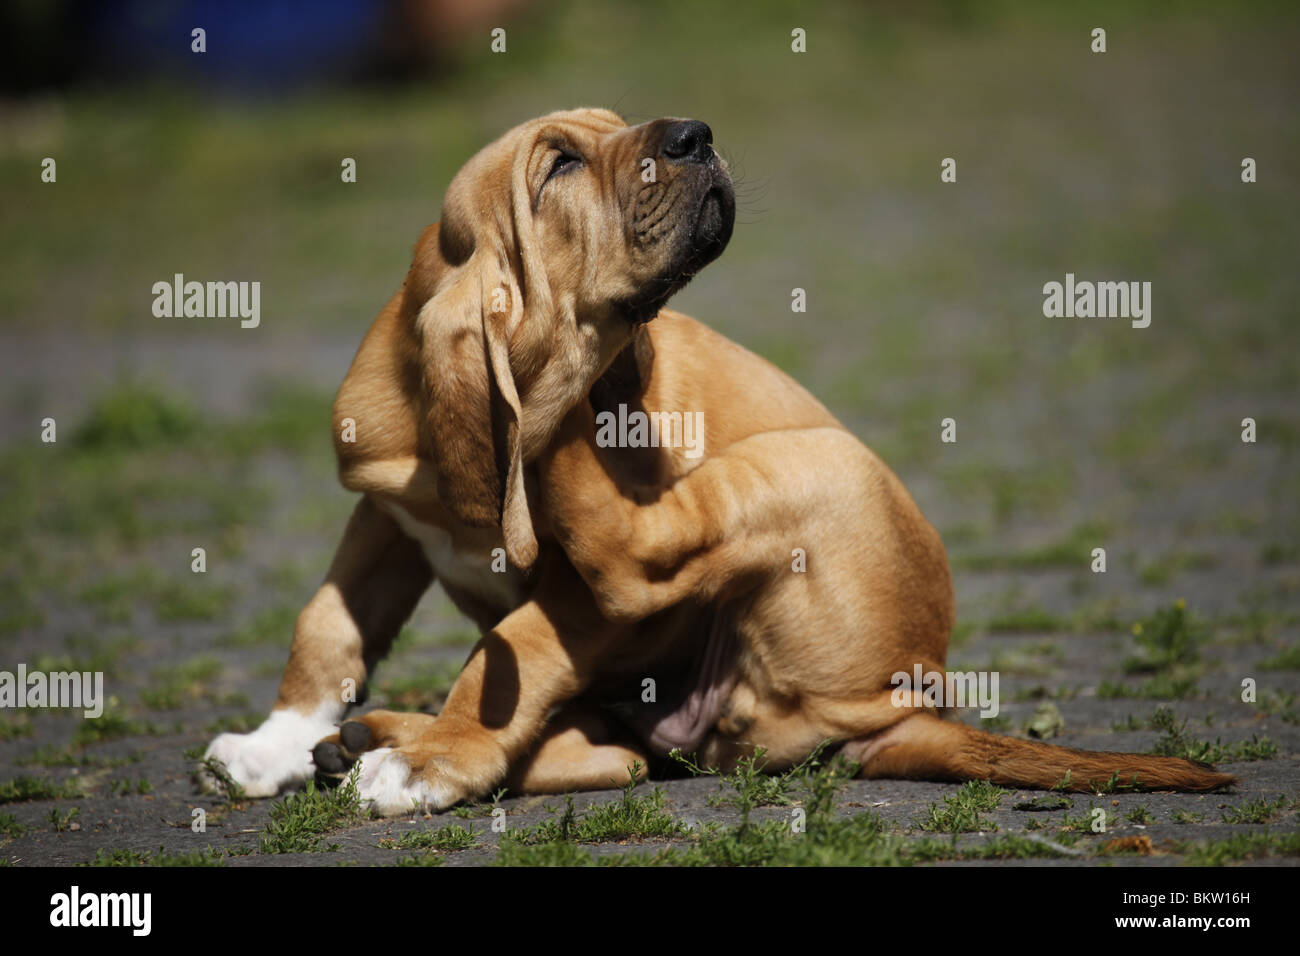 Bluthund juckt sich / itching Bloodhound Stock Photo